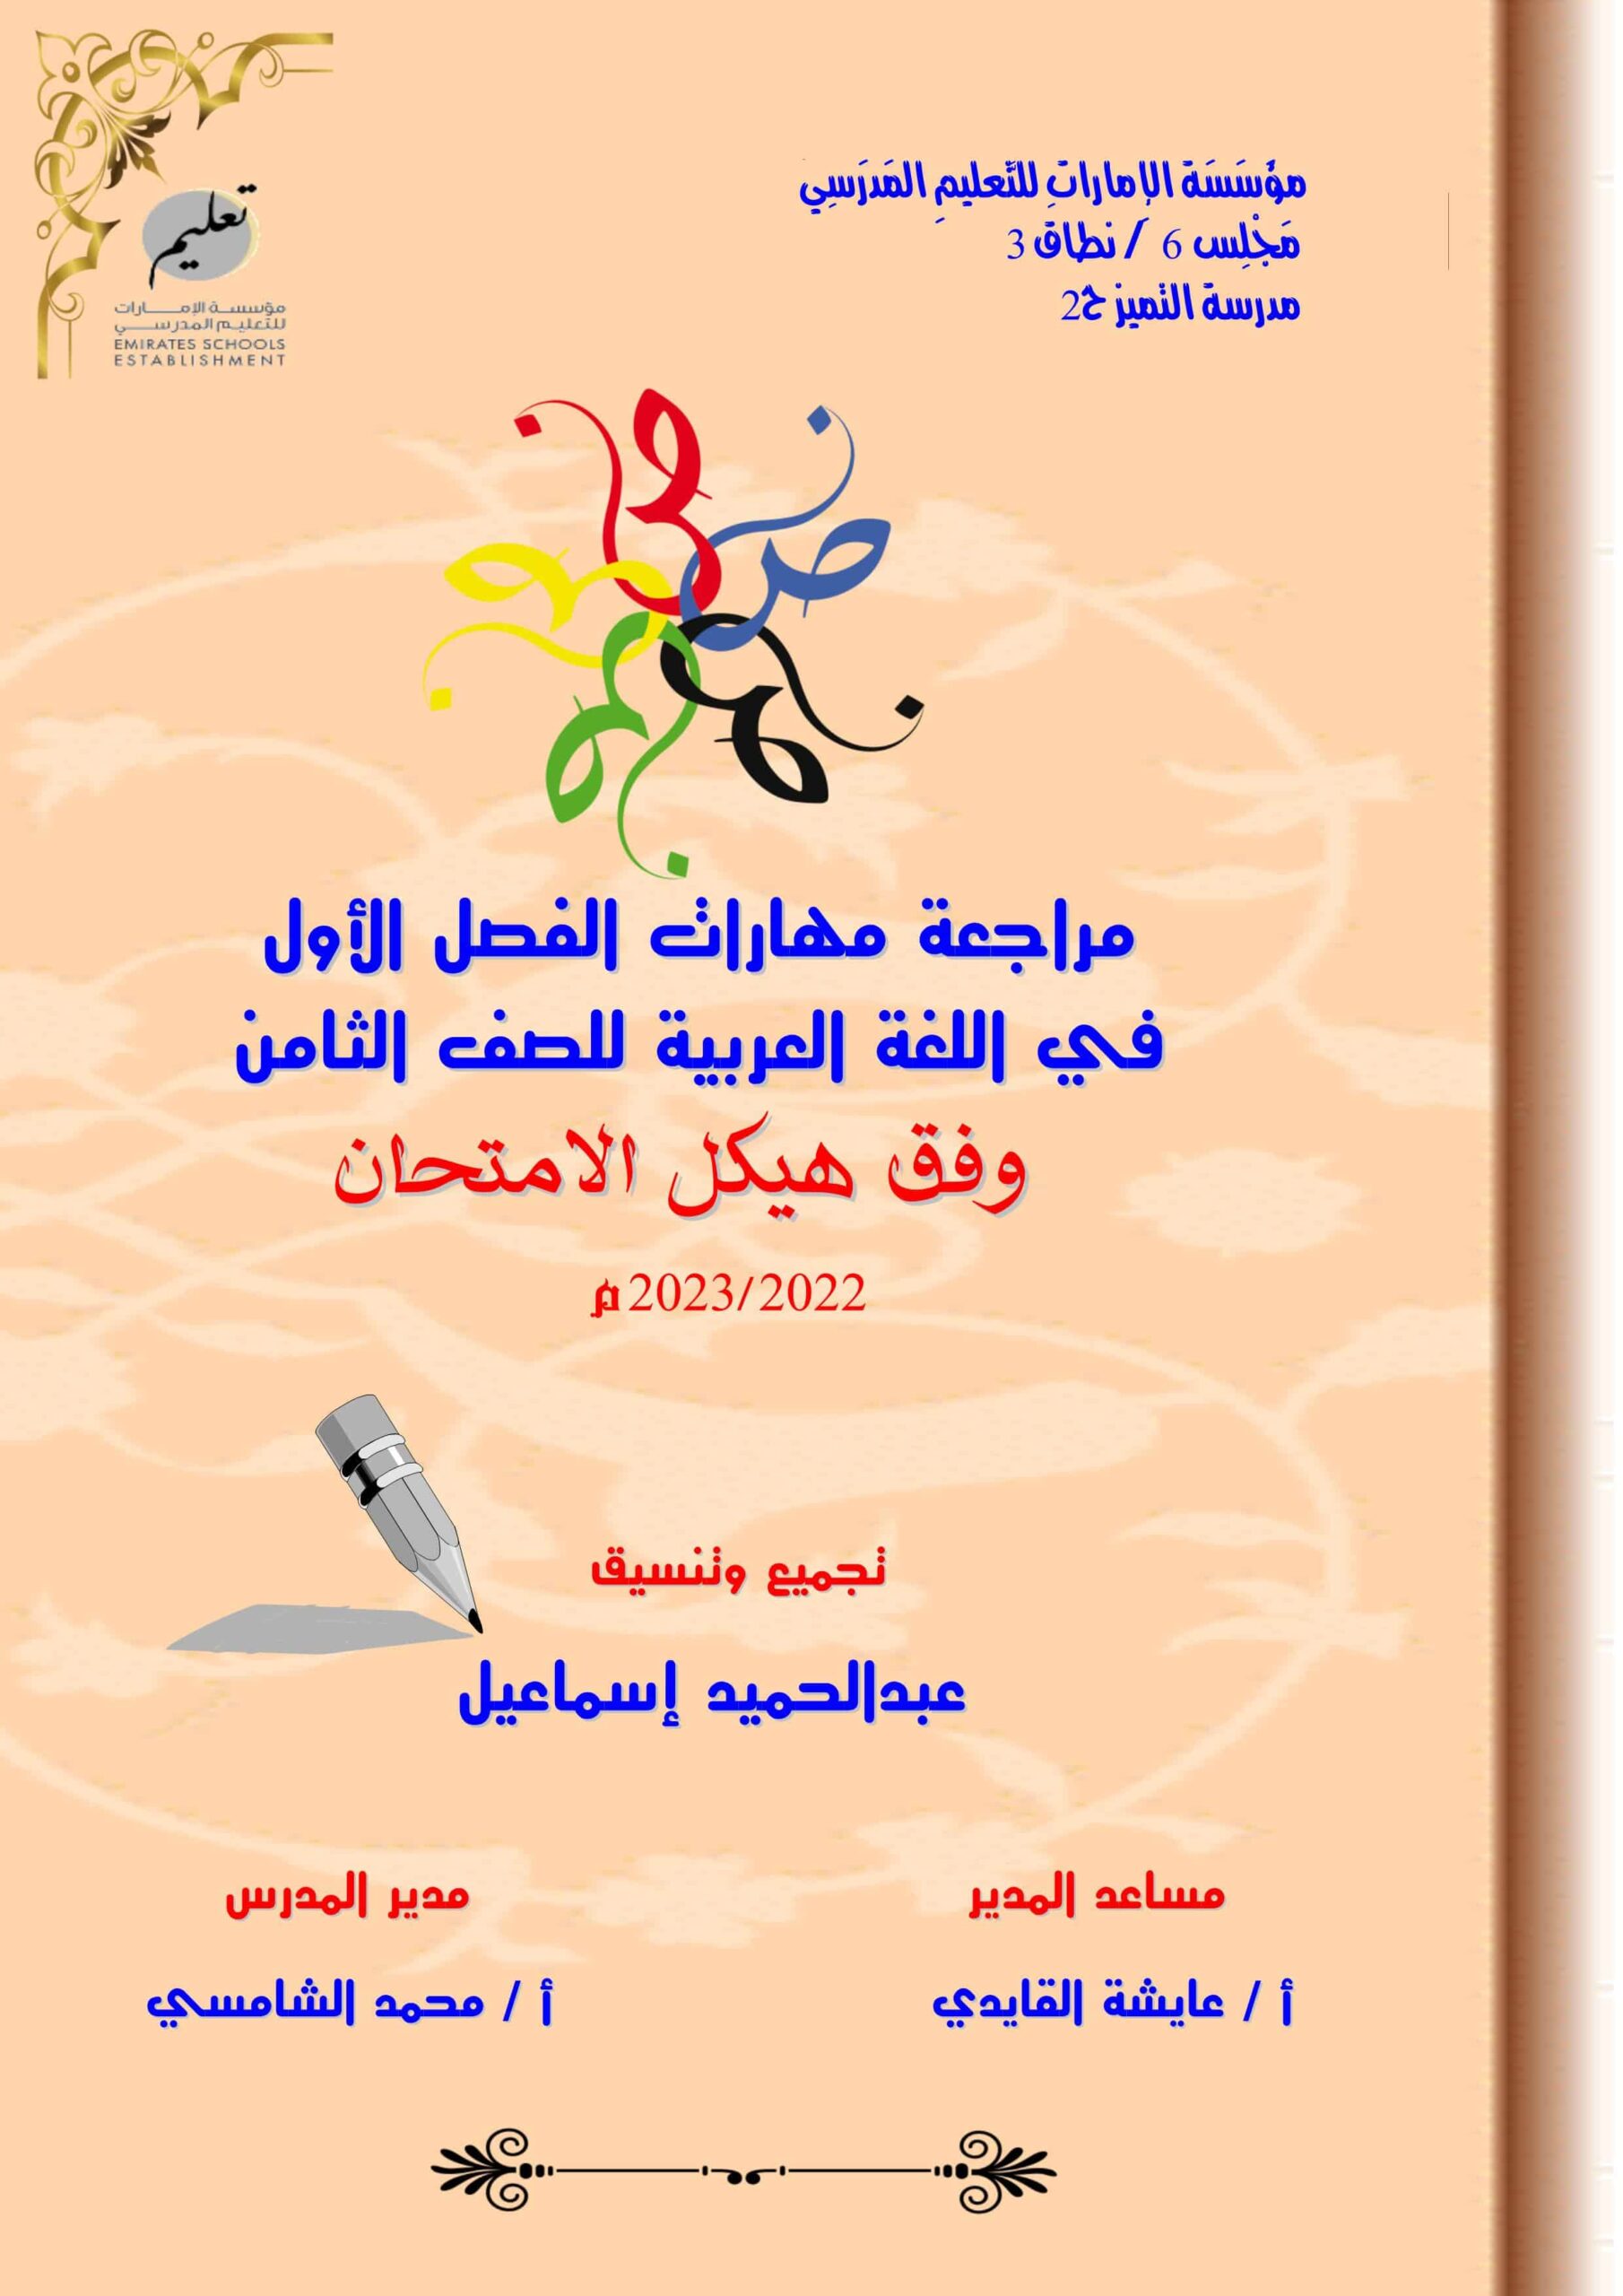 مراجعة مهارات وفق الهيكل اللغة العربية الصف الثامن 